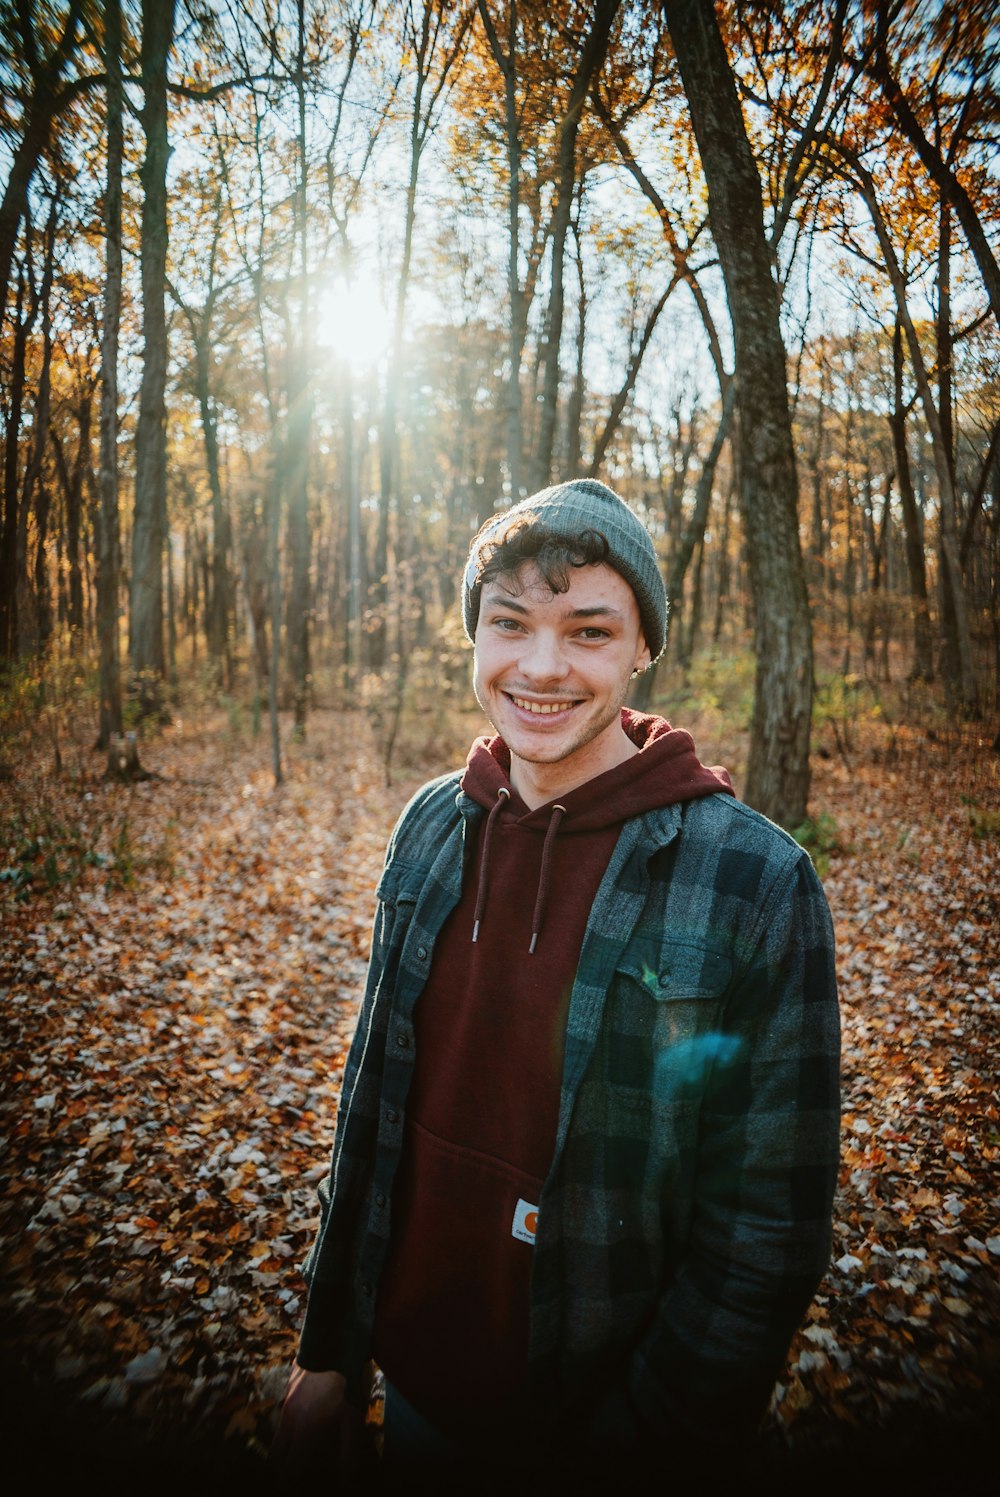 un giovane in piedi in una foresta con le foglie a terra